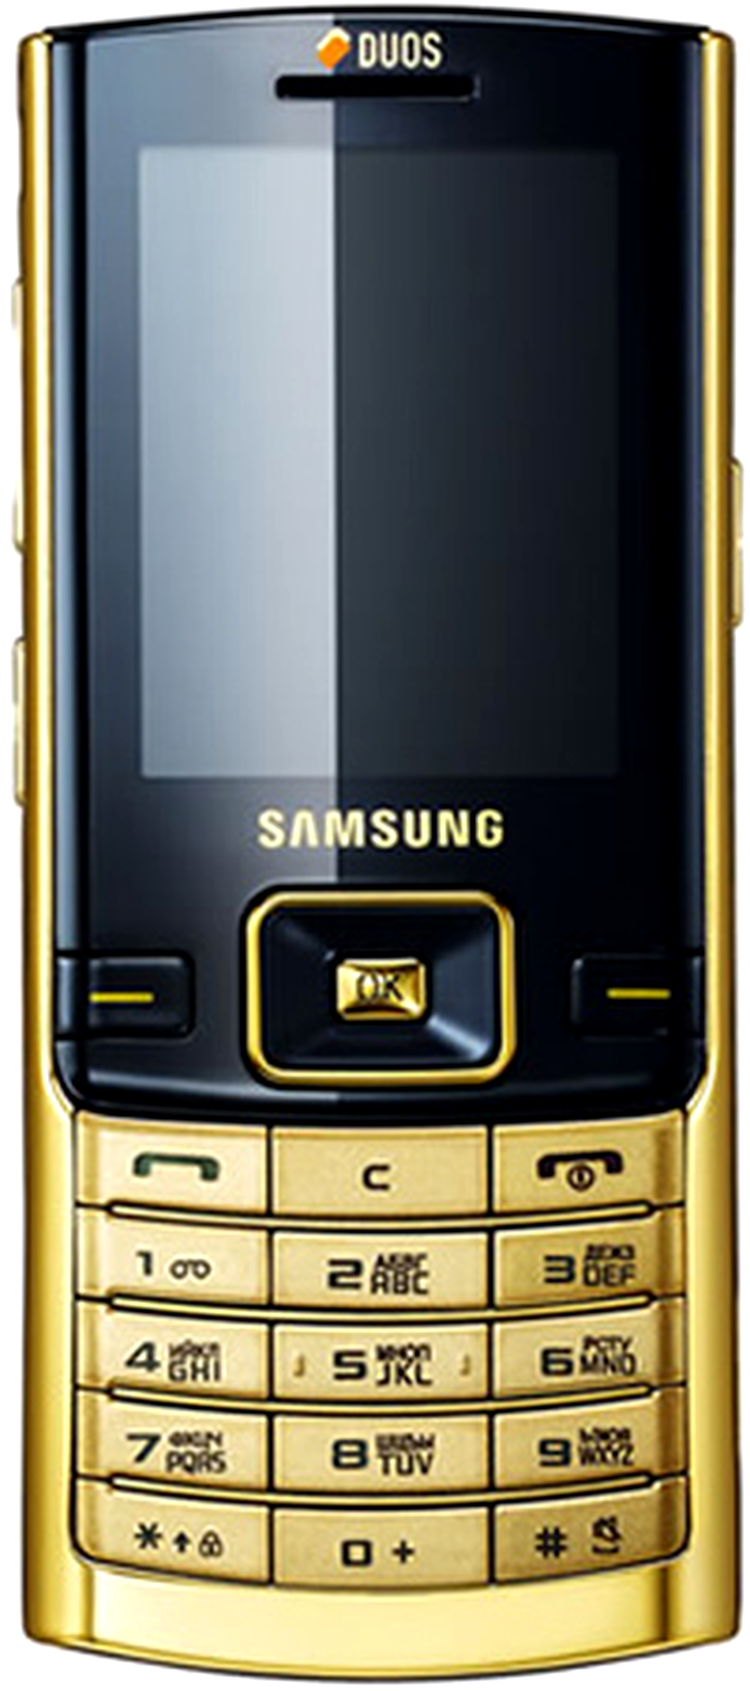 Samsung D780 